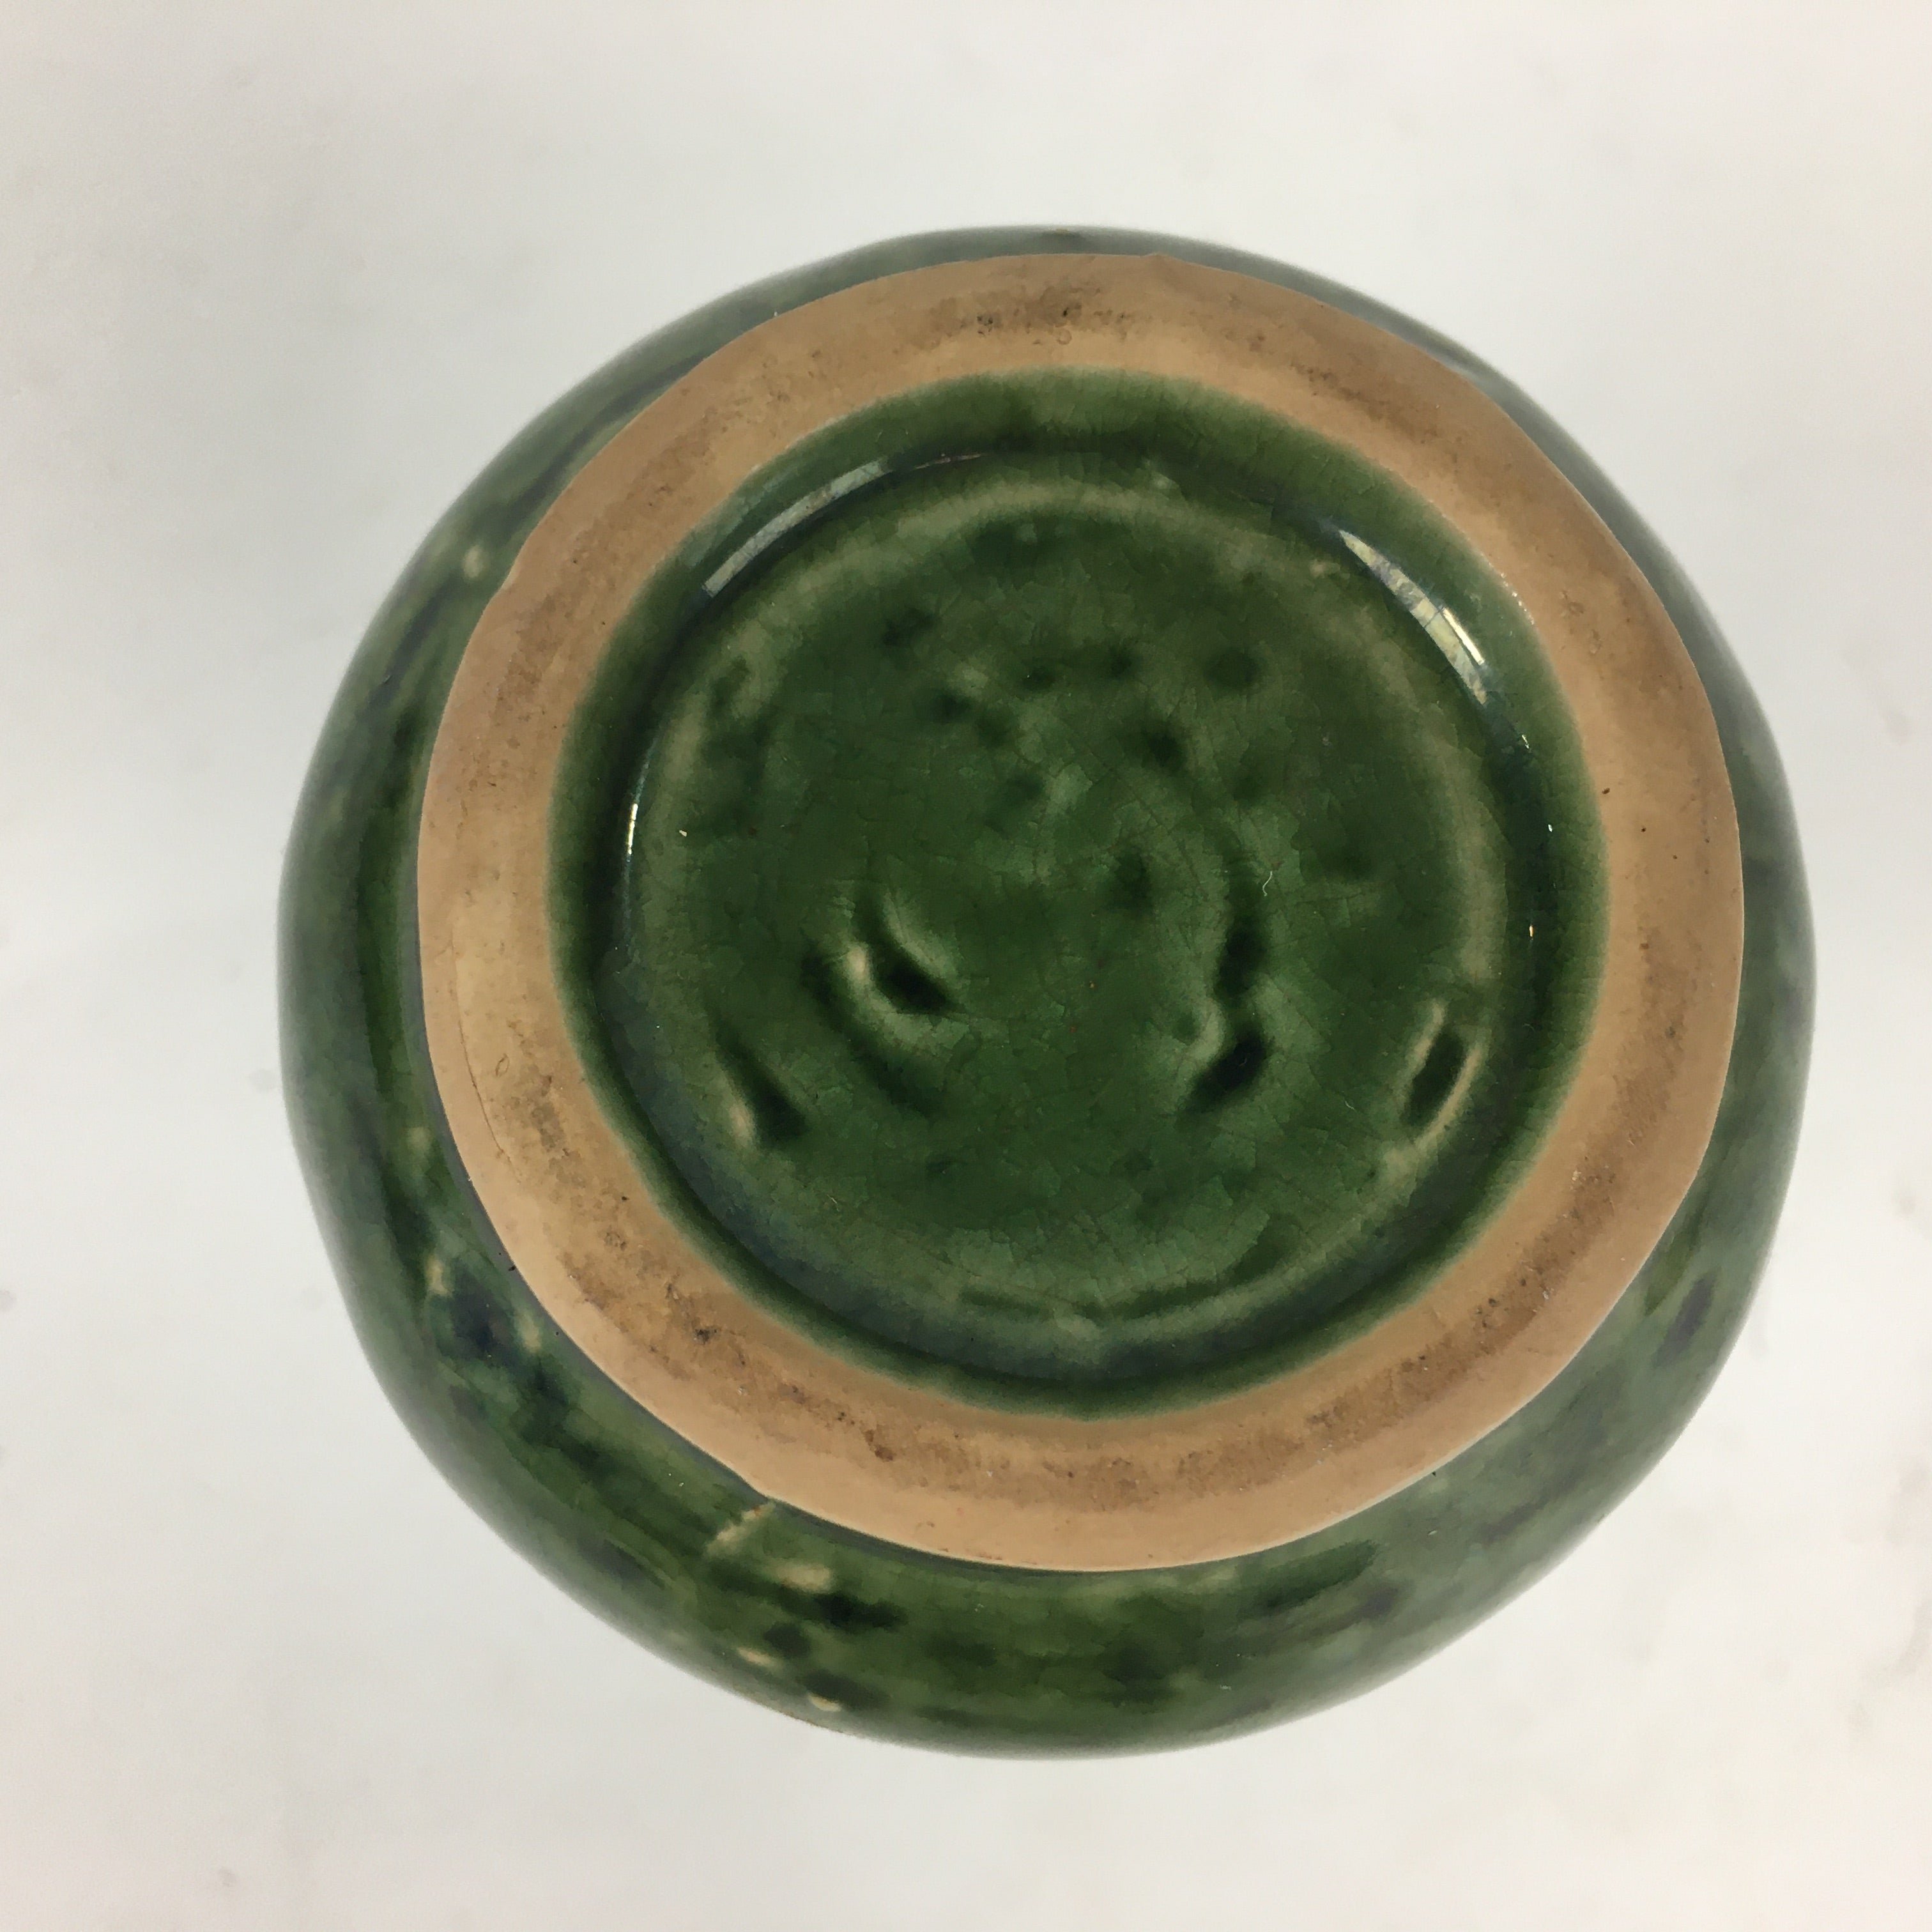 Japanese Ceramic Sake Bottle Vtg Pottery Yakimono Green Tokkuri TS335